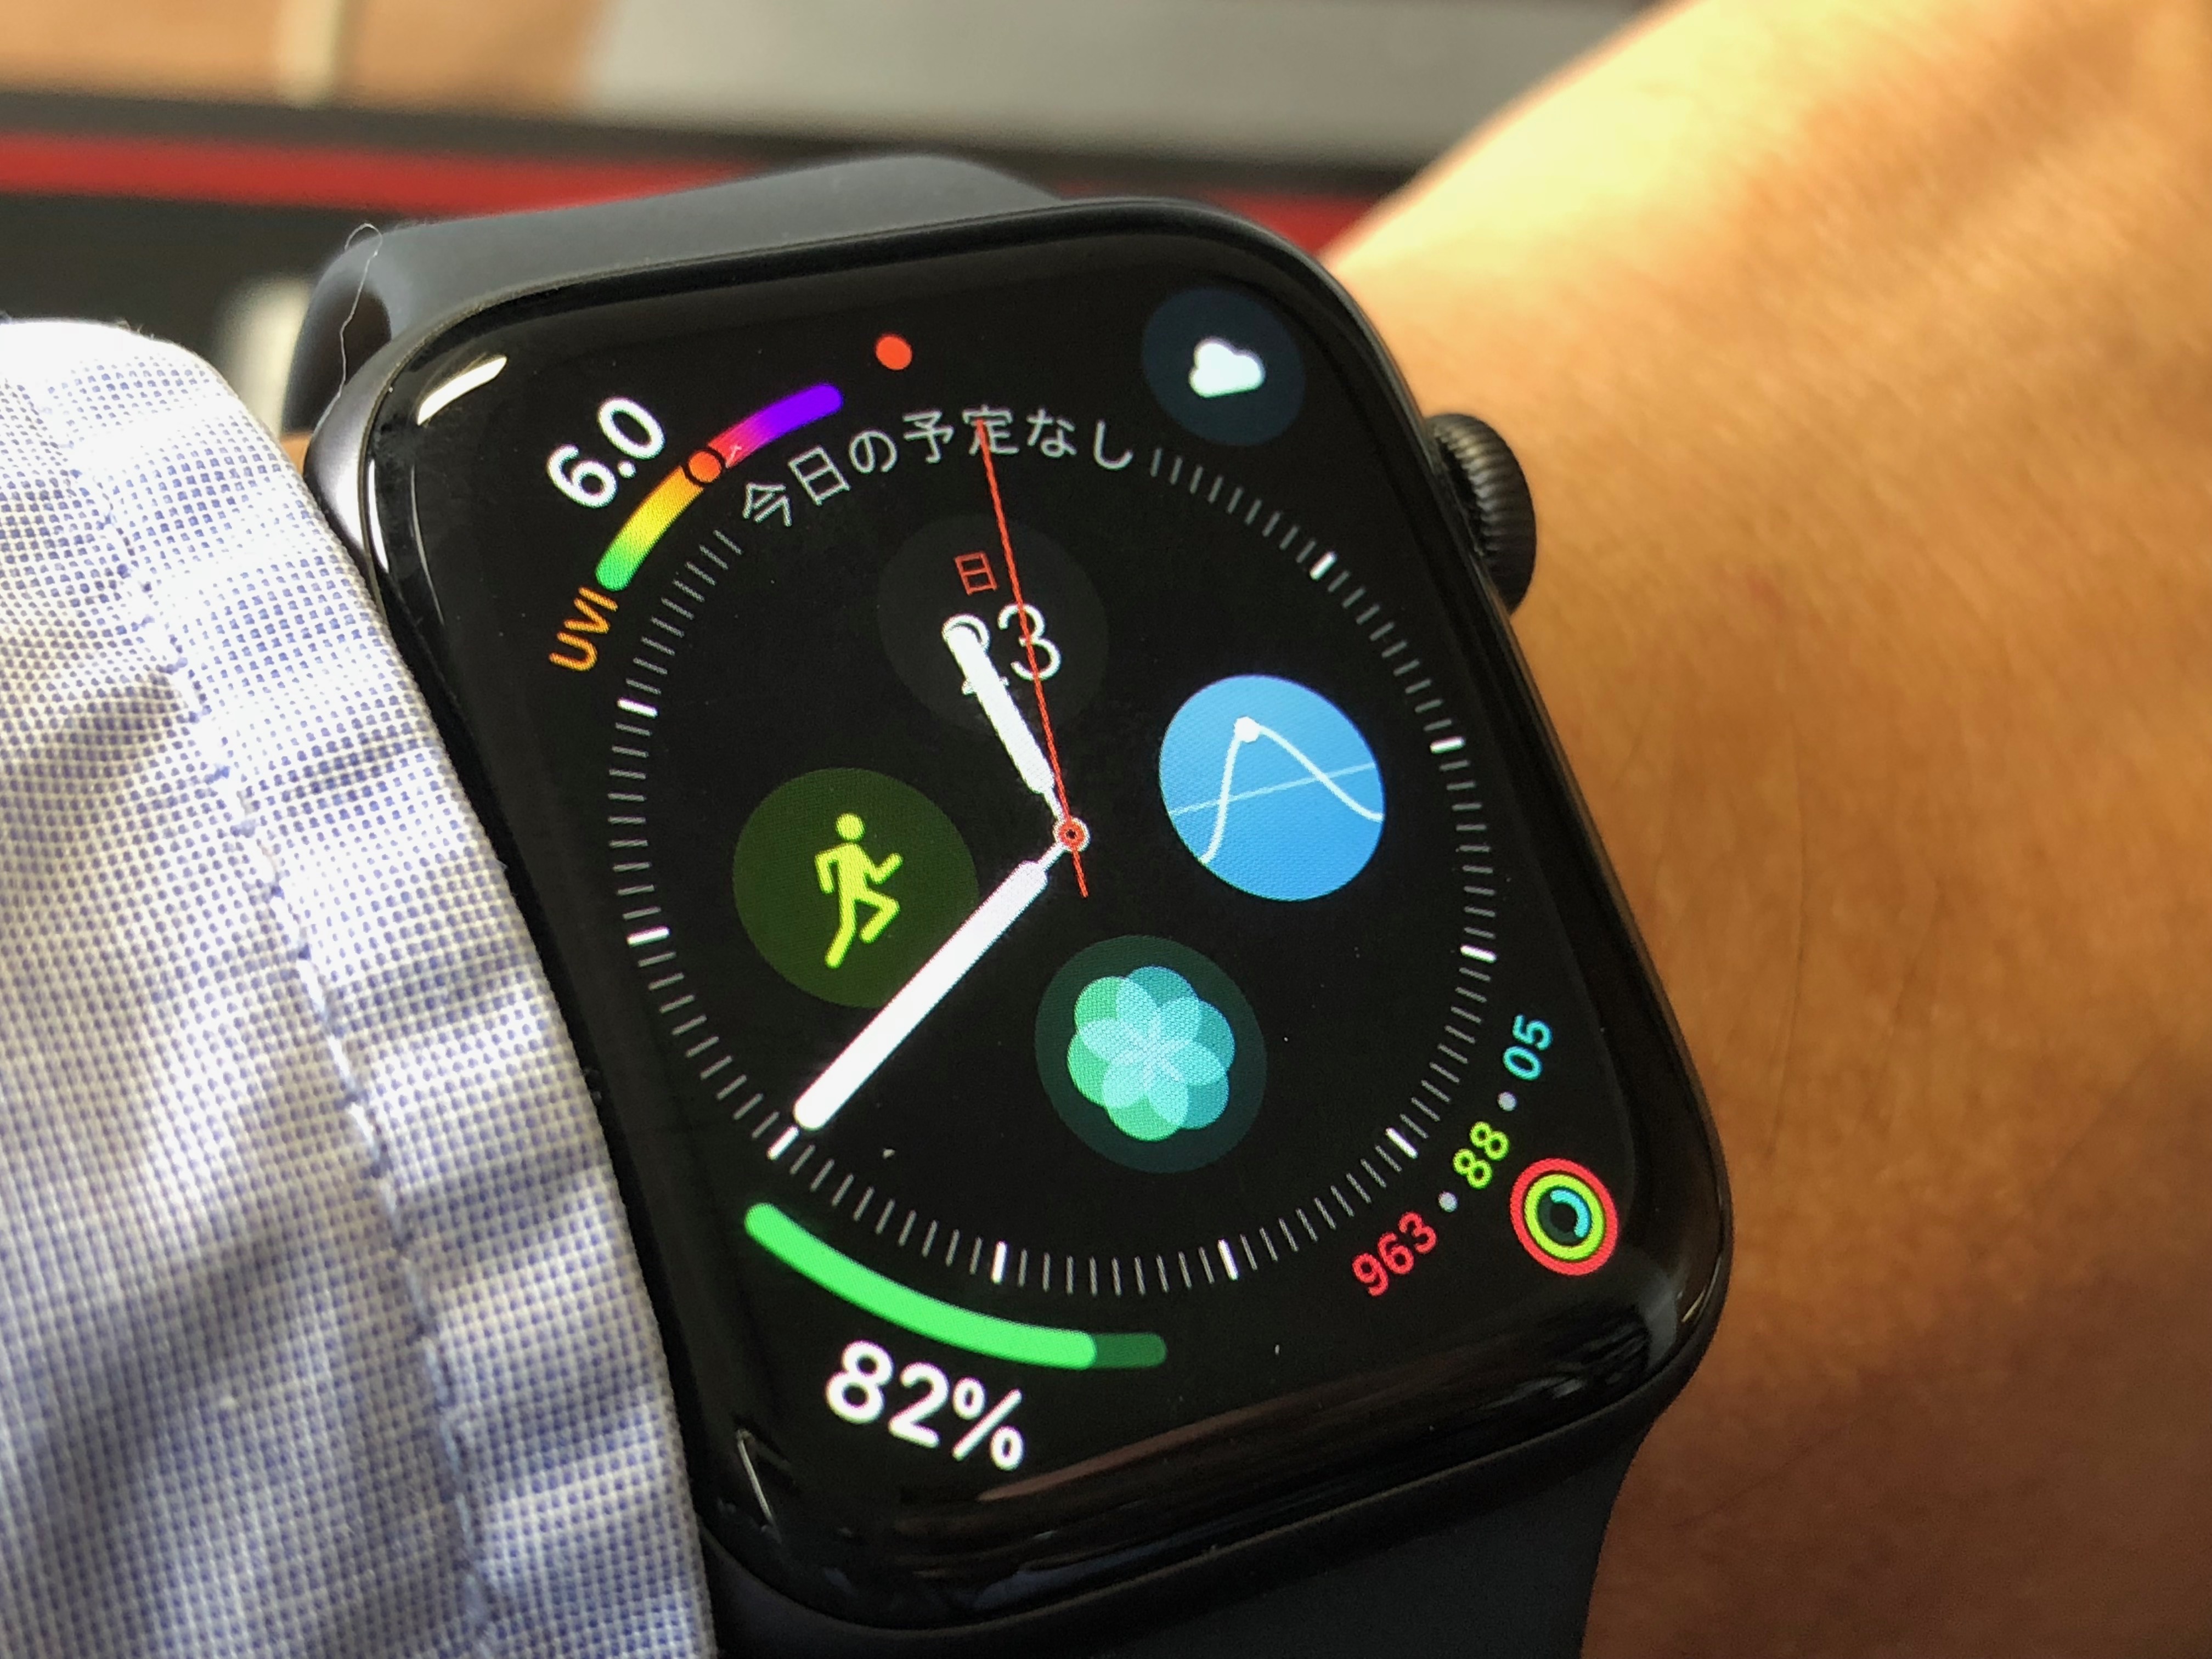 [Apple Watch]新型「Apple Watch Series 4」の文字盤「Infograph」に表示されているUV指数について調べてみたよ